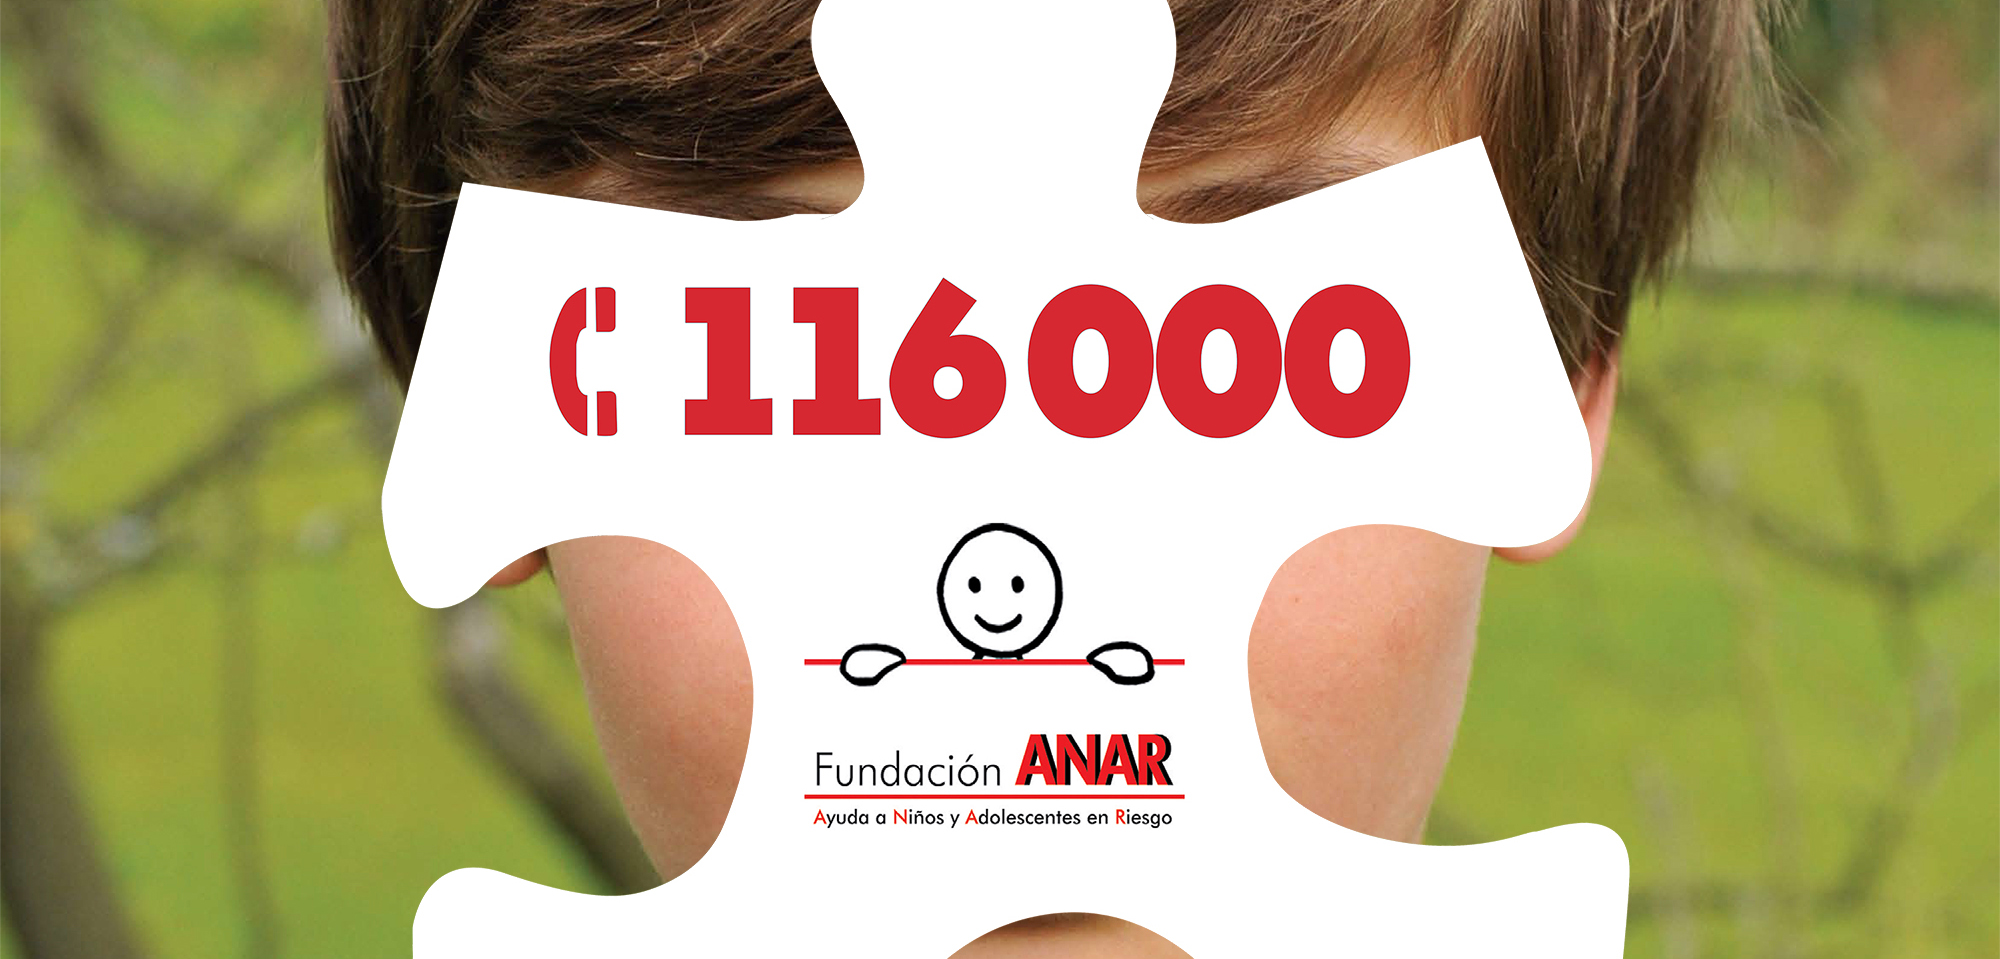 Fundación ANAR y SOS Desaparecidos colaboran en la búsqueda de menores de edad desaparecidos